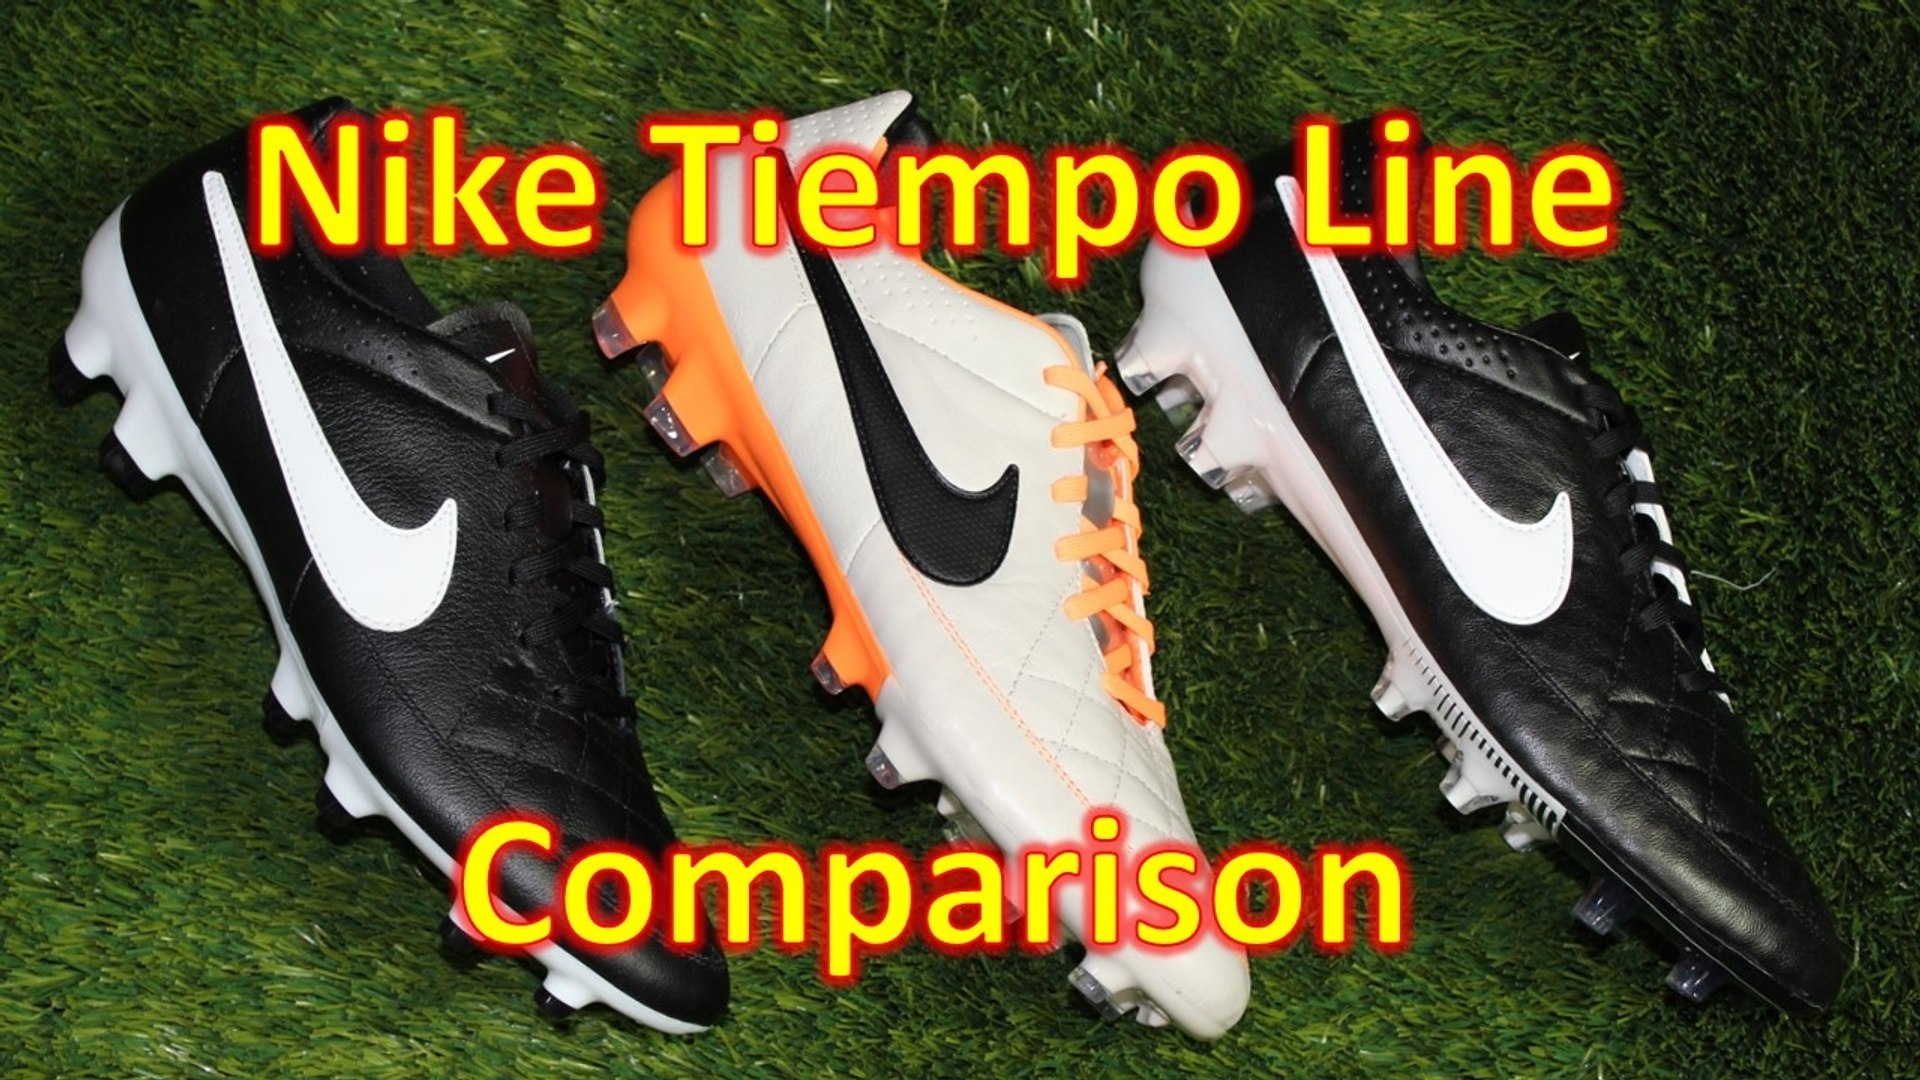 Nike Tiempo Line Comparison - Legend 5 